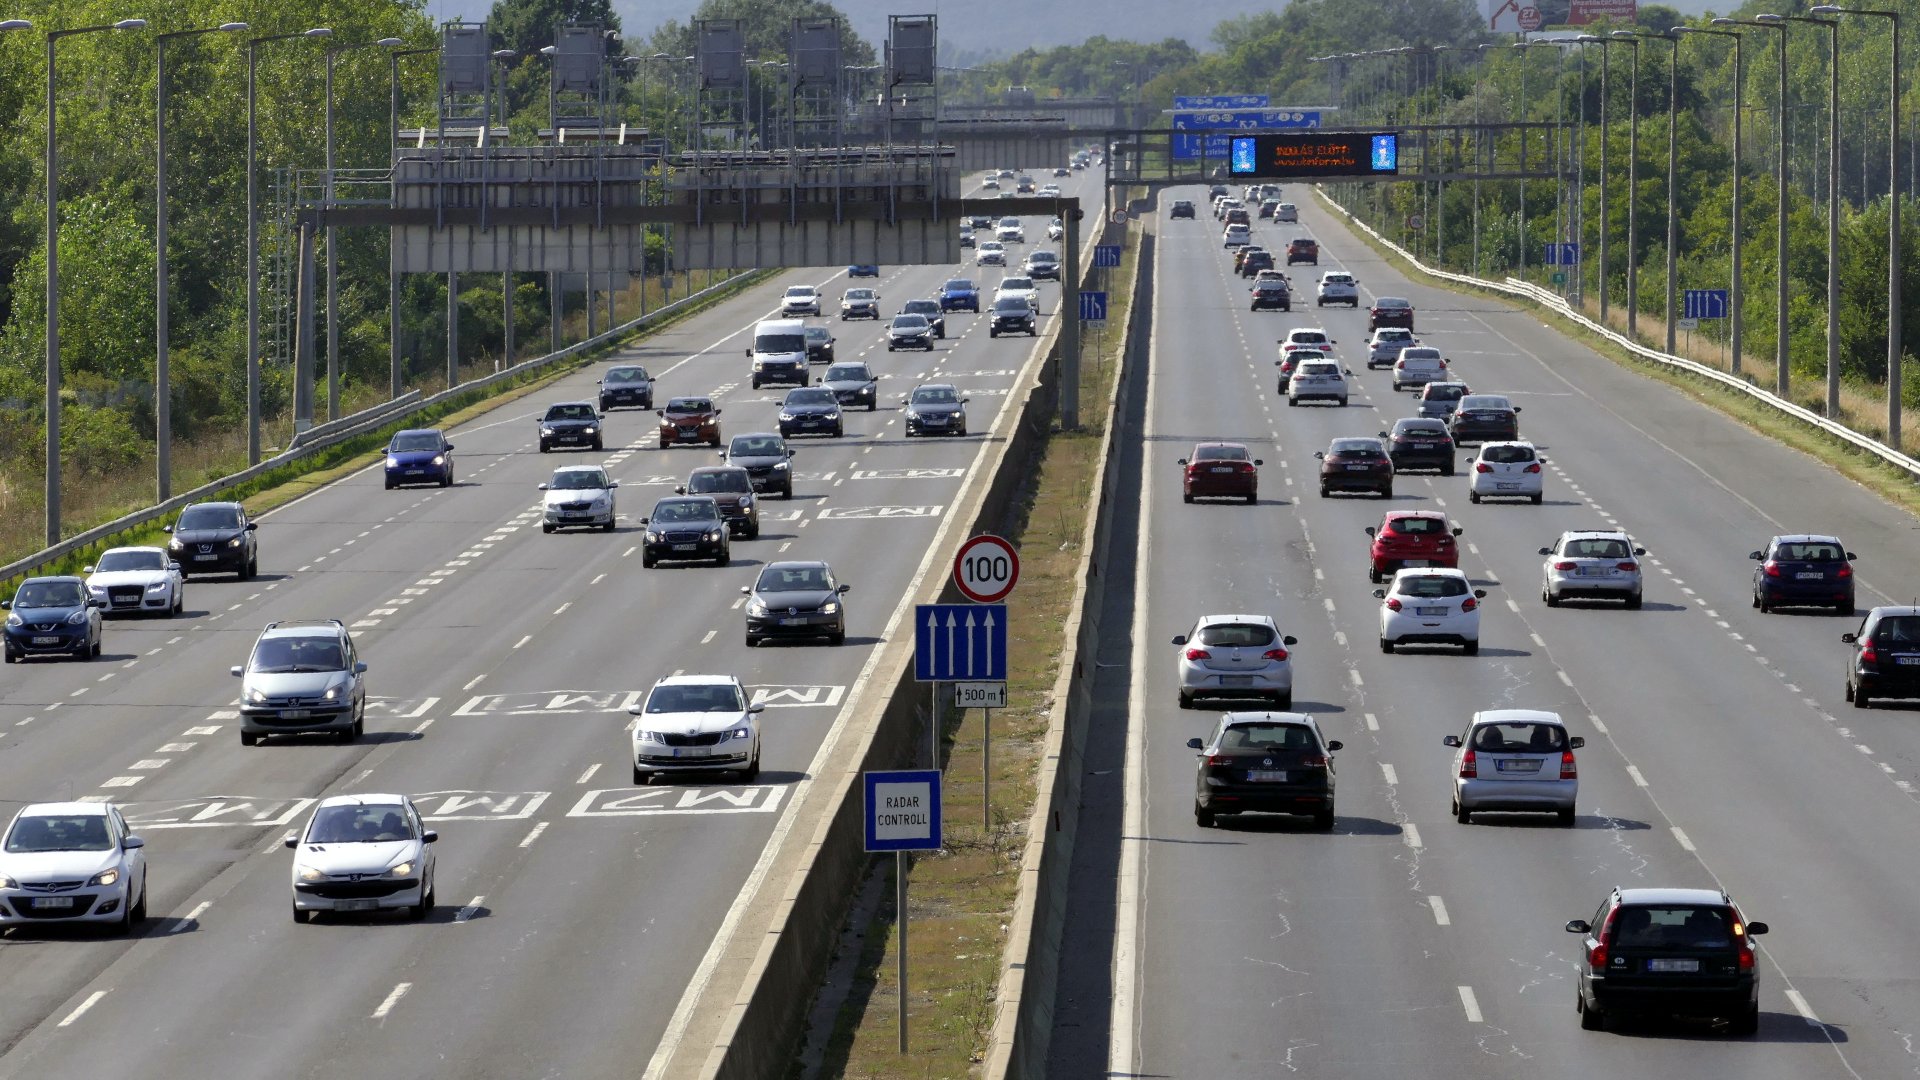 Vasárnap kora délutáni személygépkocsi forgalom az M1-es és az M7-es autópályák közös fõvárosi bevezetõ szakaszán Budaörs térségében